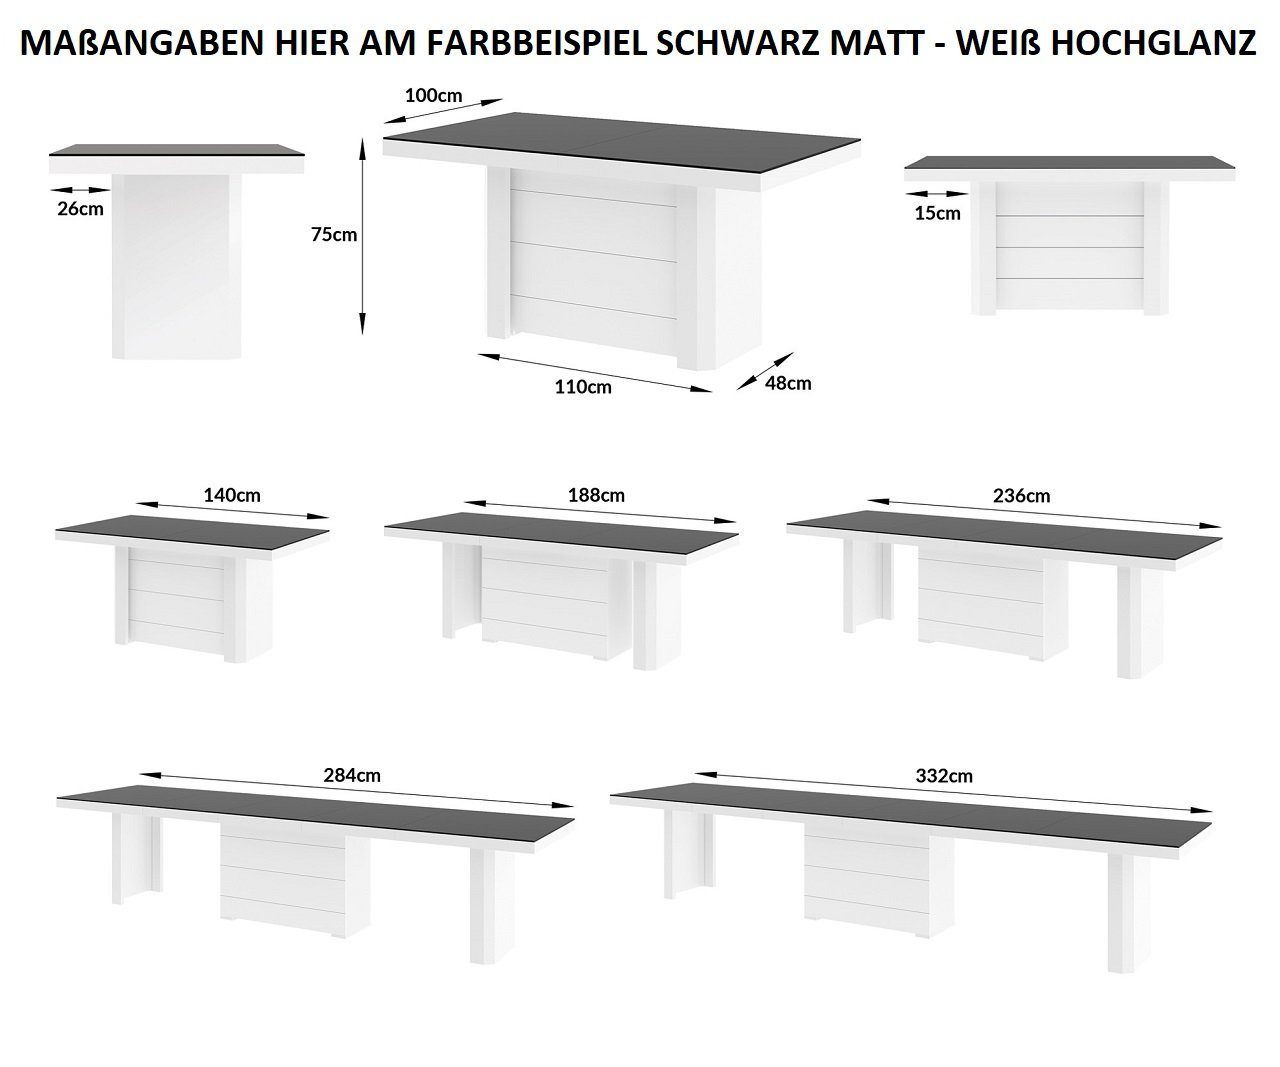 designimpex Esstisch / HOCHGLANZ MATT ausziehbar Weiß HE-777 Grau 140-332 Anthrazit cm XXL